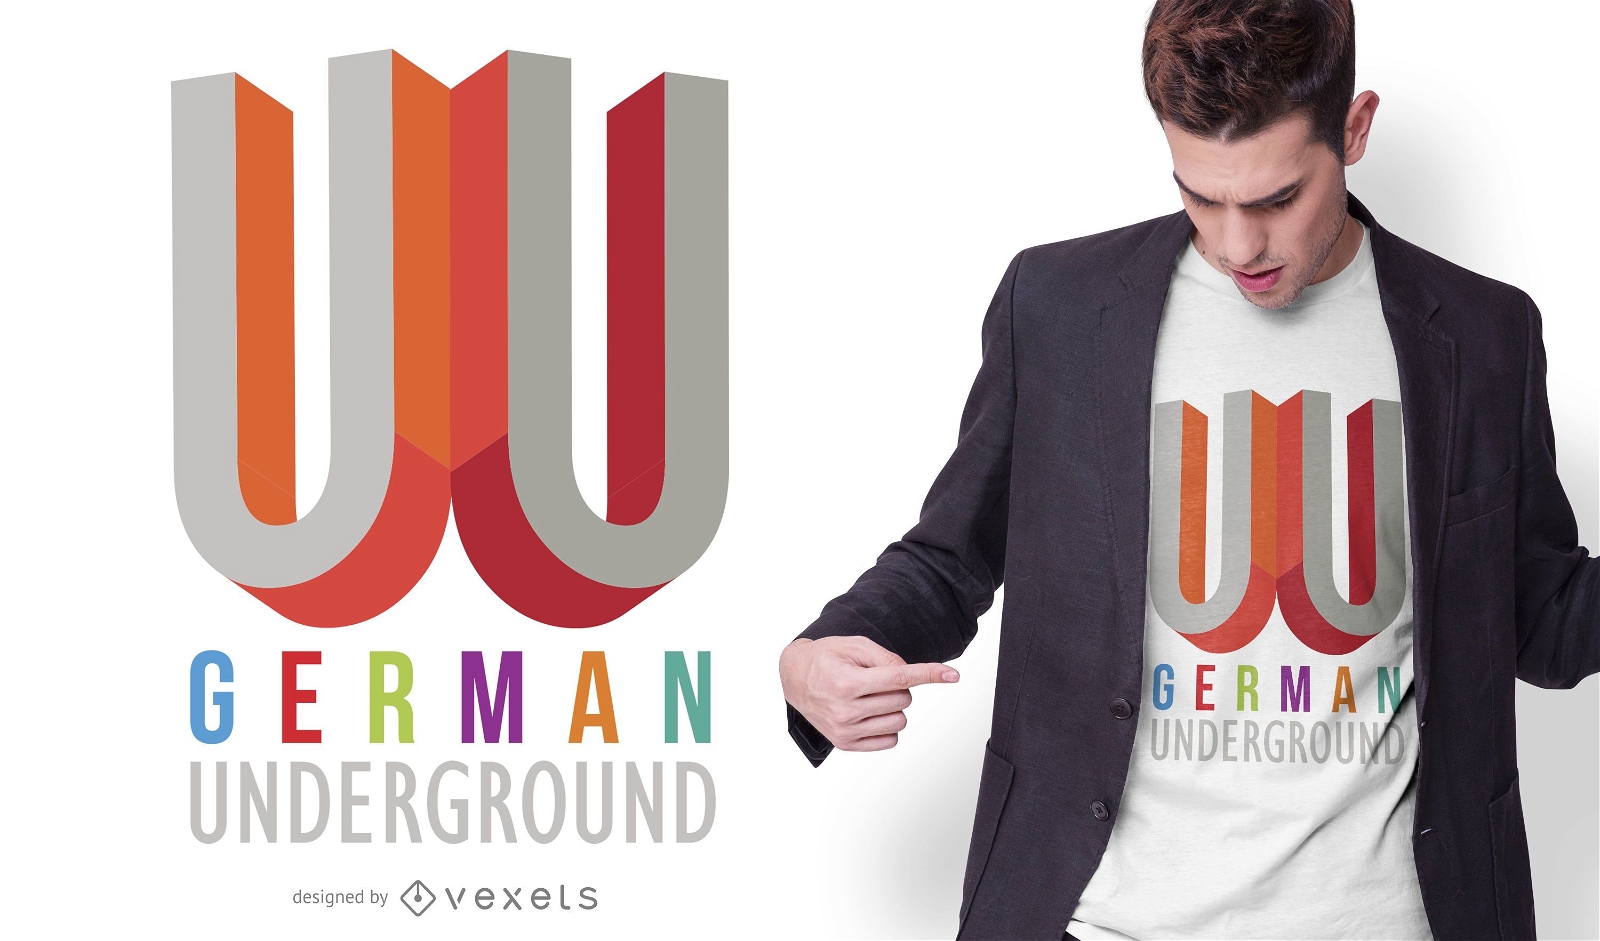 German Underground T-shirt Design